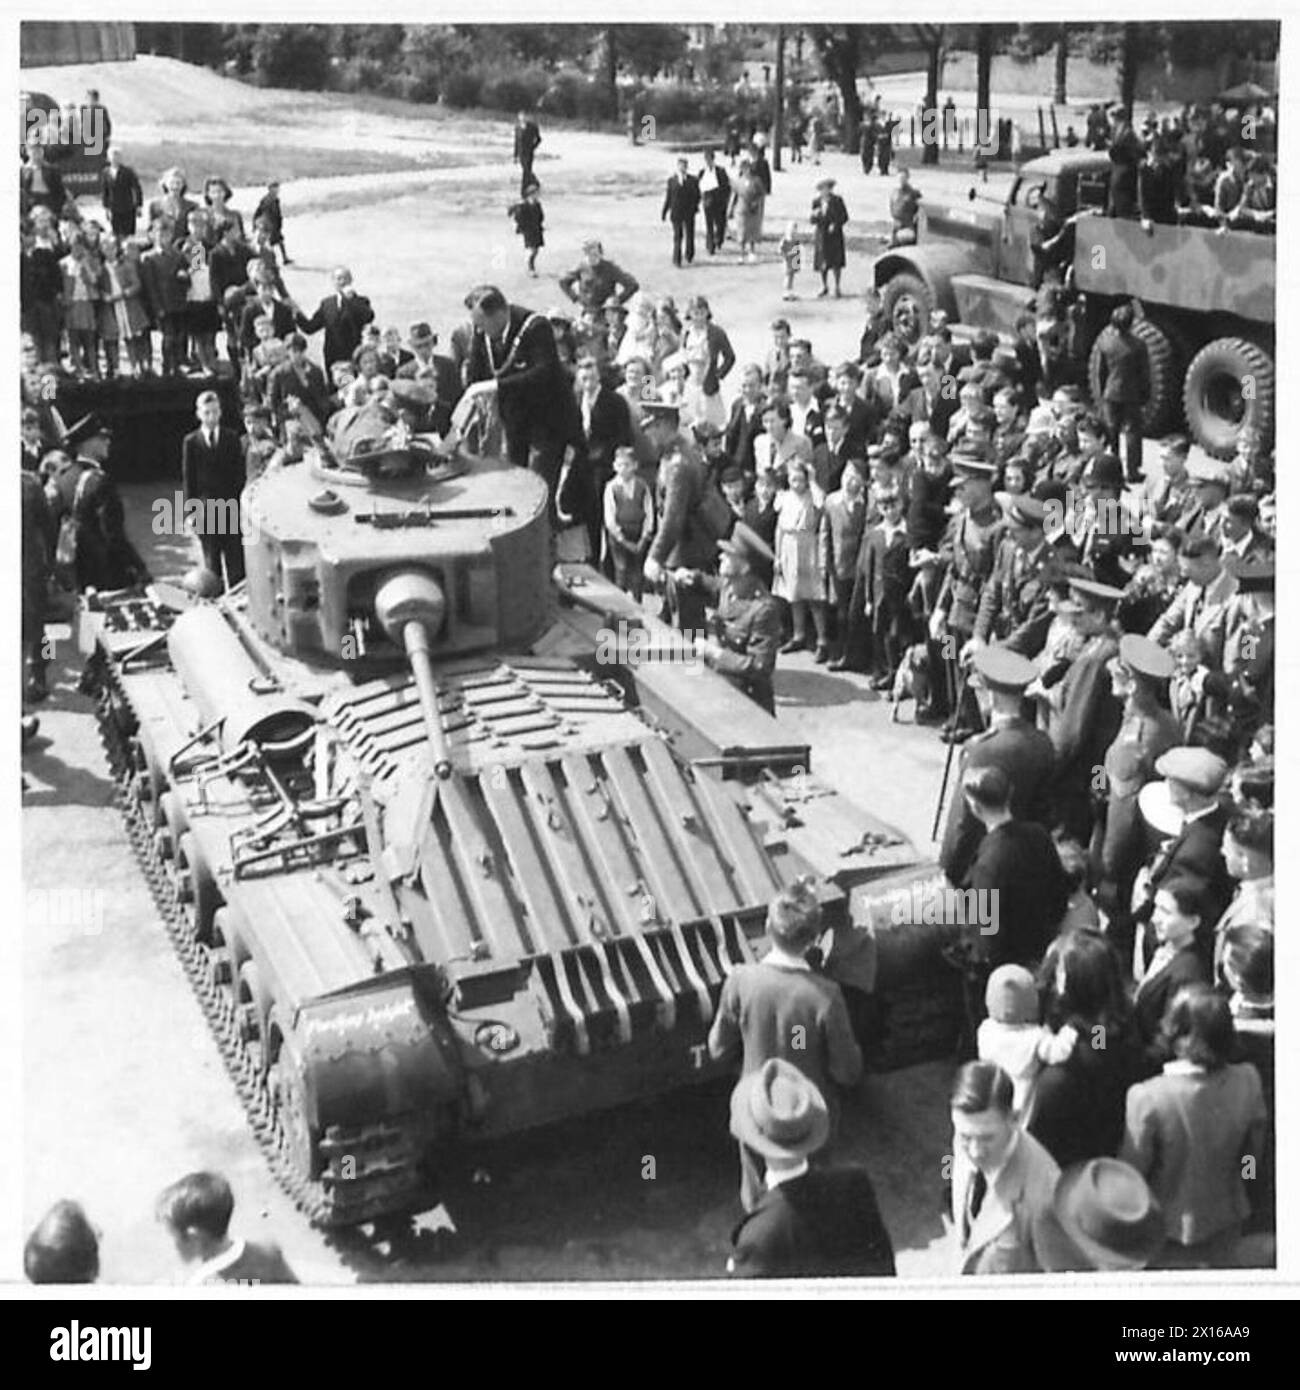 MILITÄRAUSSTELLUNG FÜR ARBEITER - der Bürgermeister inspizierte einen Matilda-Panzer nach seiner Ankunft auf dem Erholungsgelände und wurde für eine Fahrt durch die britische Armee mitgenommen Stockfoto